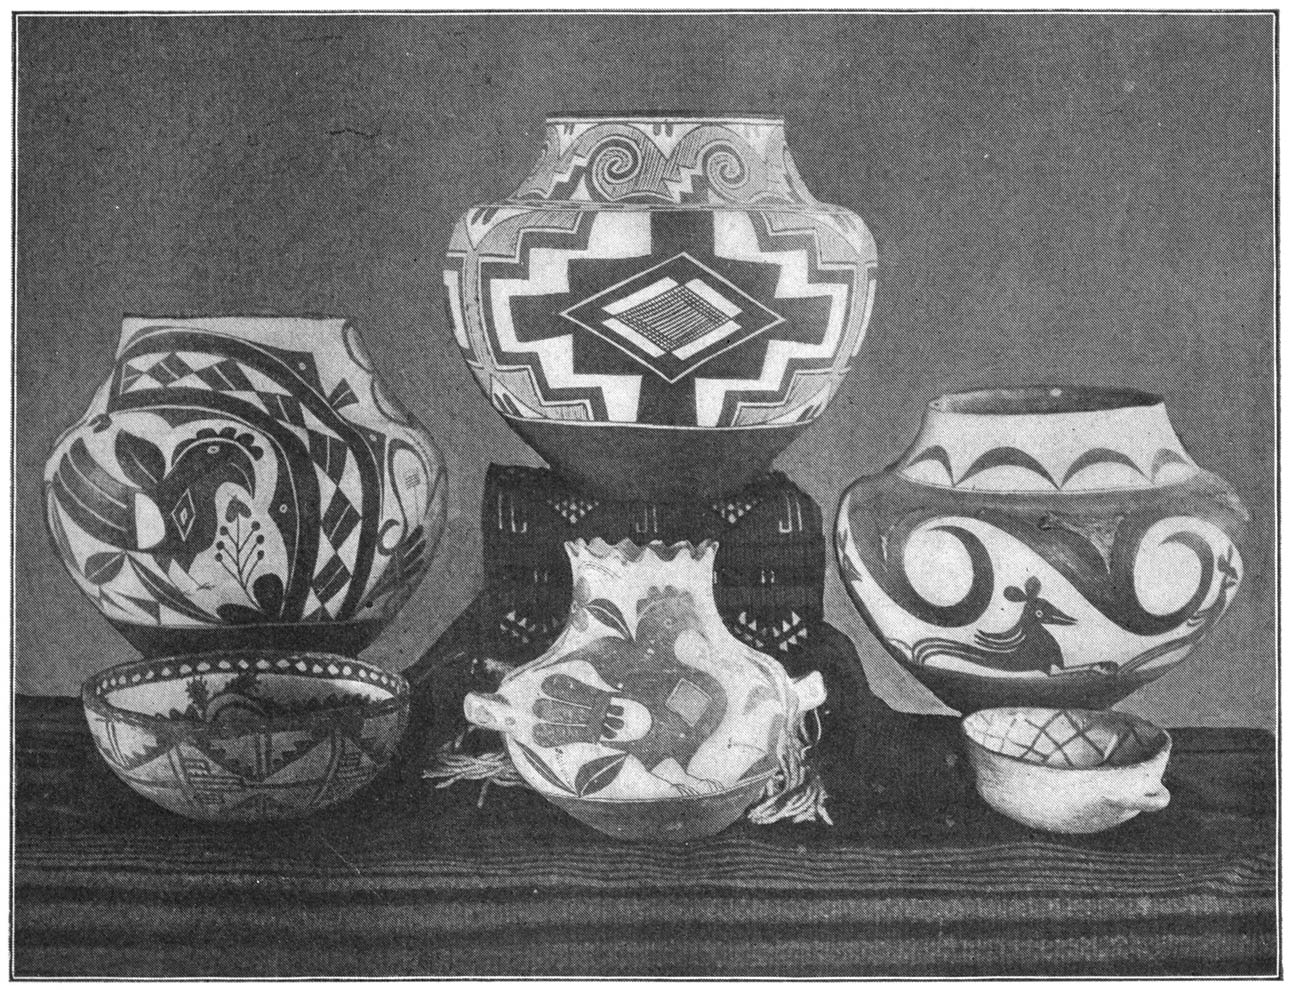 Pueblo Indian Pottery